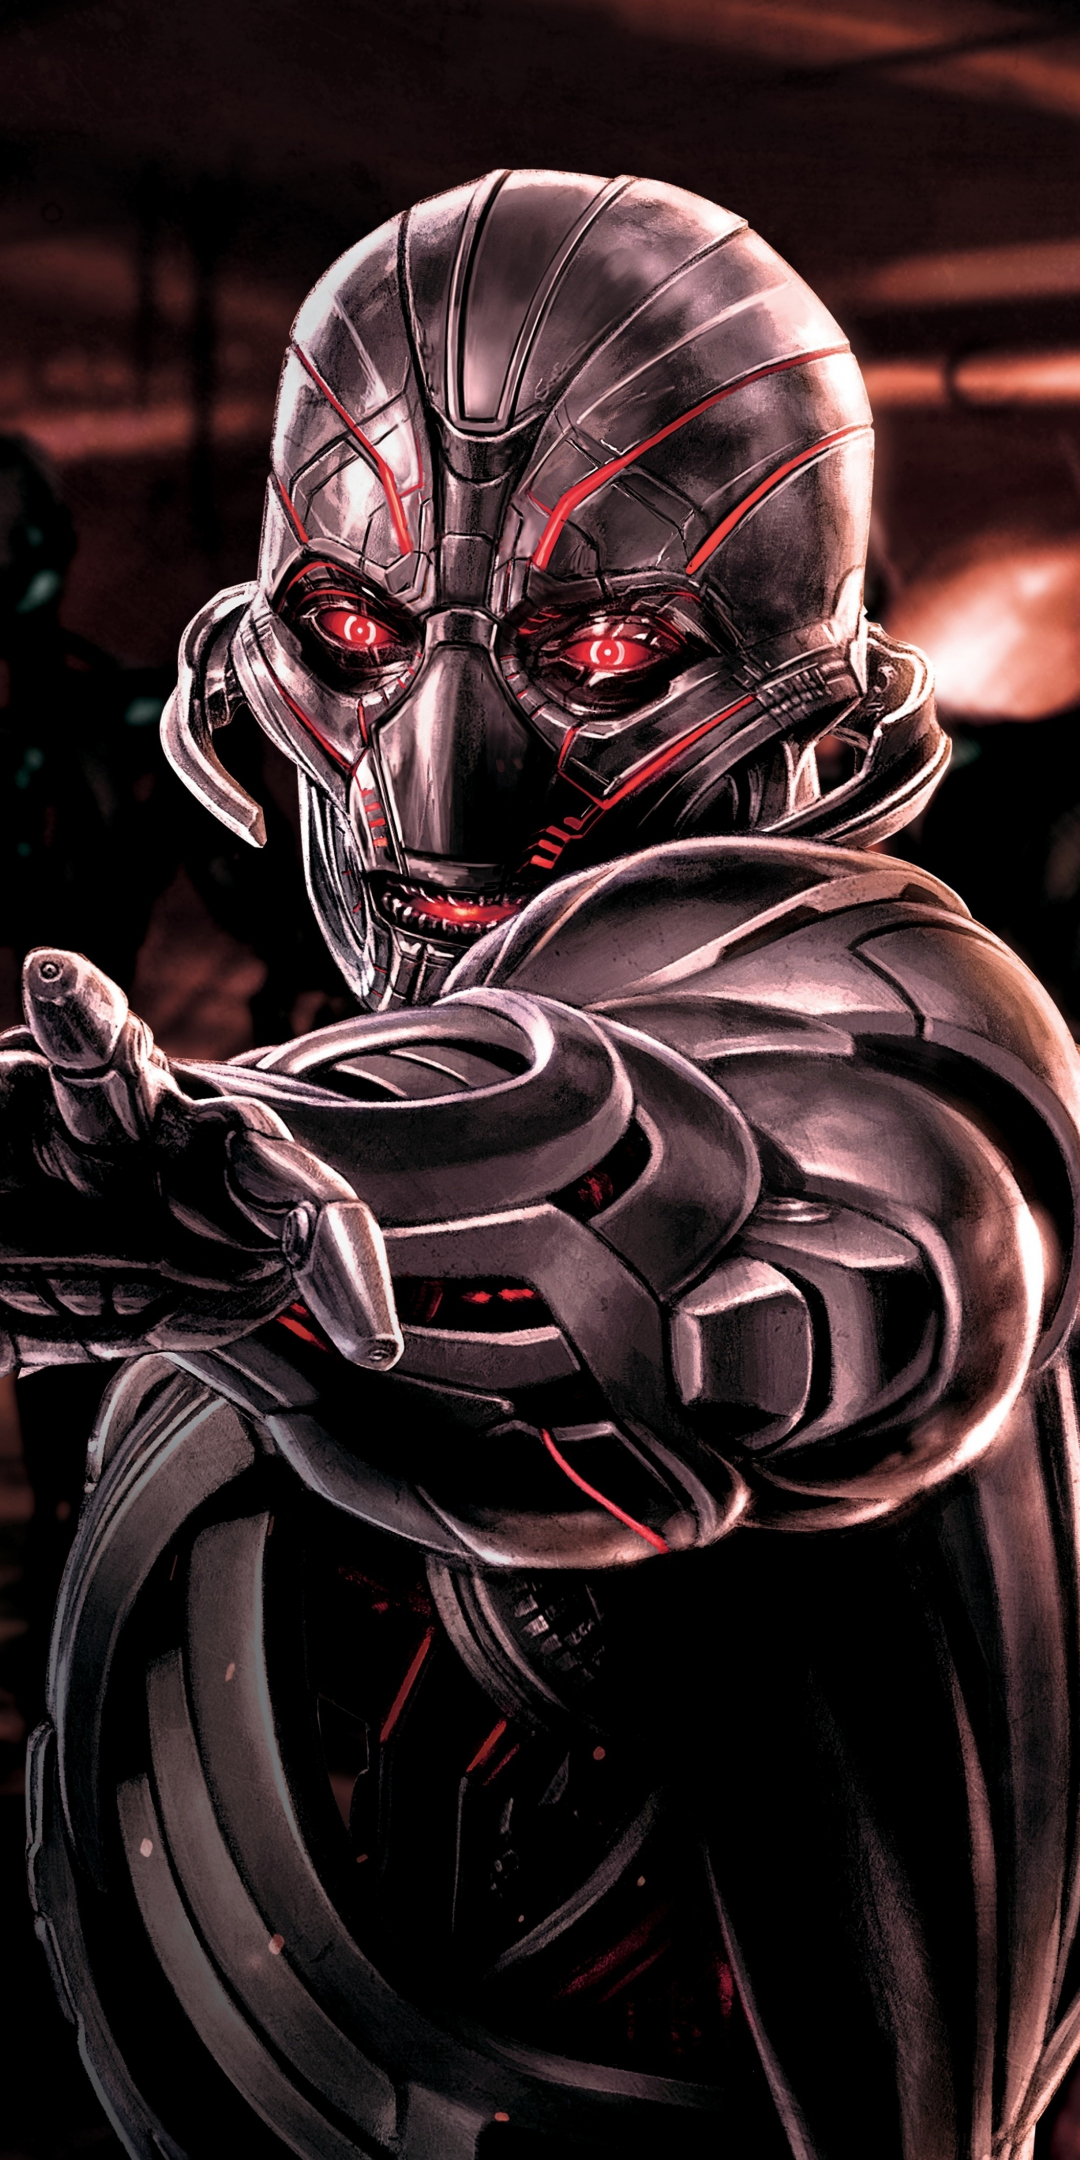 Ultron, Avengers: Age of Ultron, supervillain, robot, marvel comics, 1080x2160 wallpaper